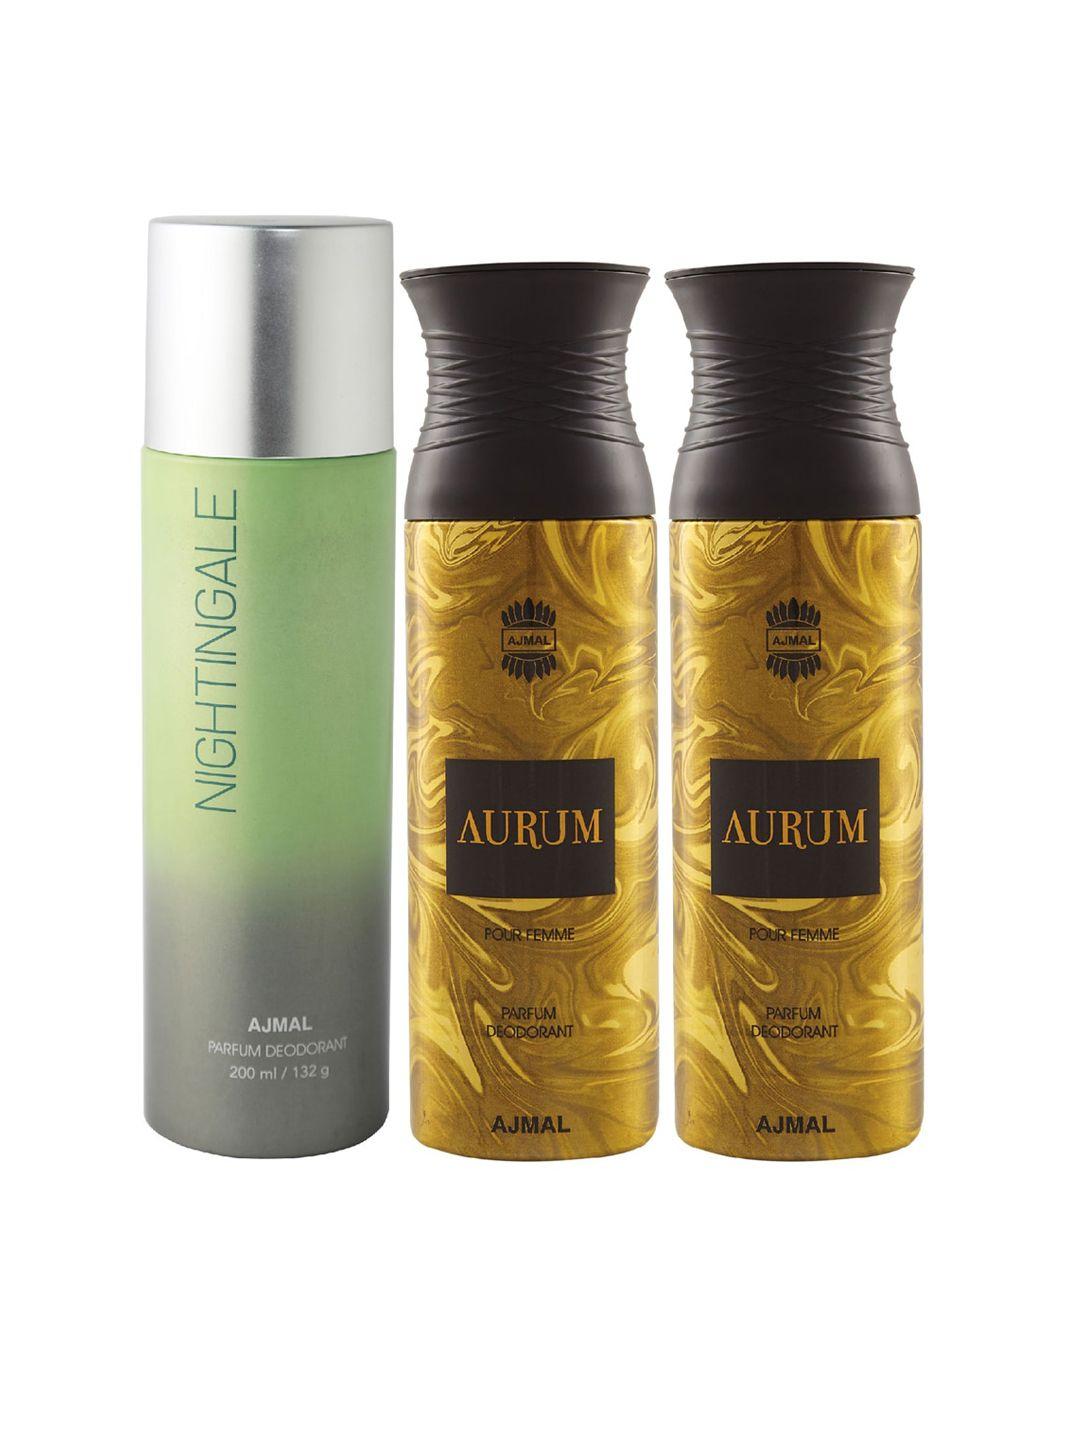 ajmal-pack-of-3-parfum-deodorant-200ml-each